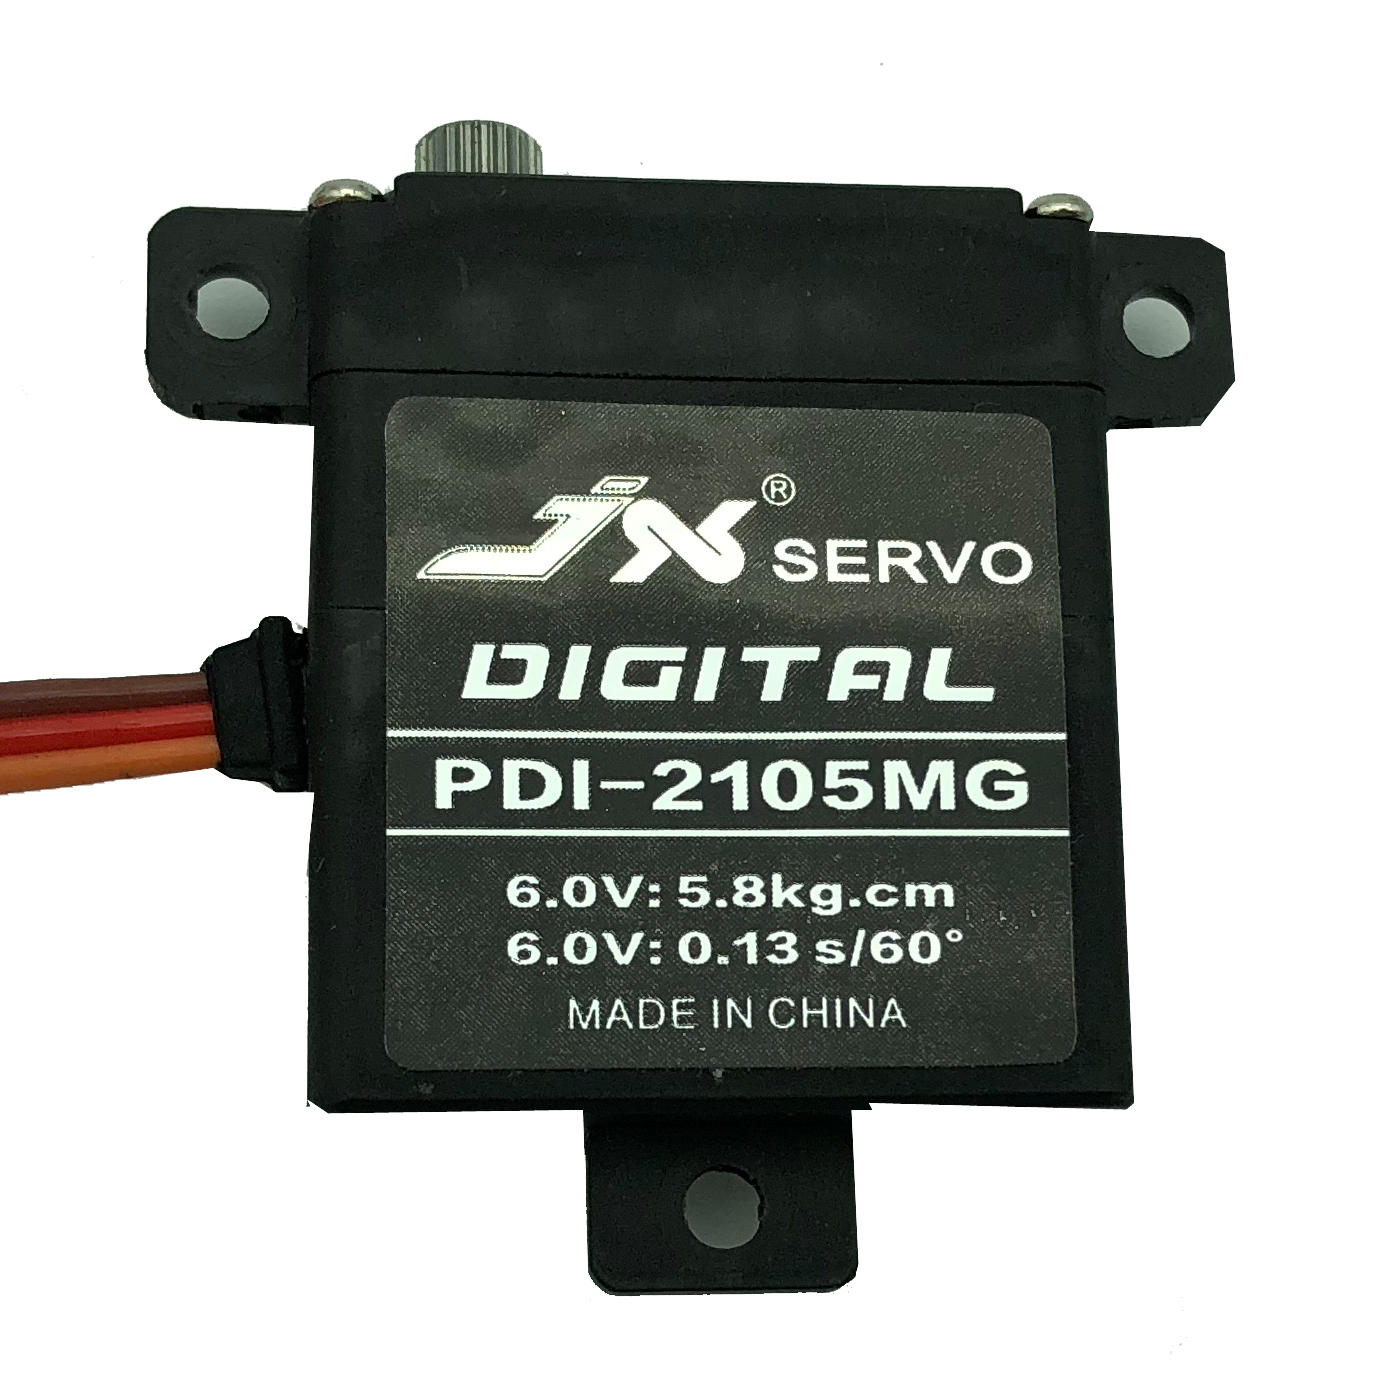 PDI-2105MG High performance metal gear digital wing servo